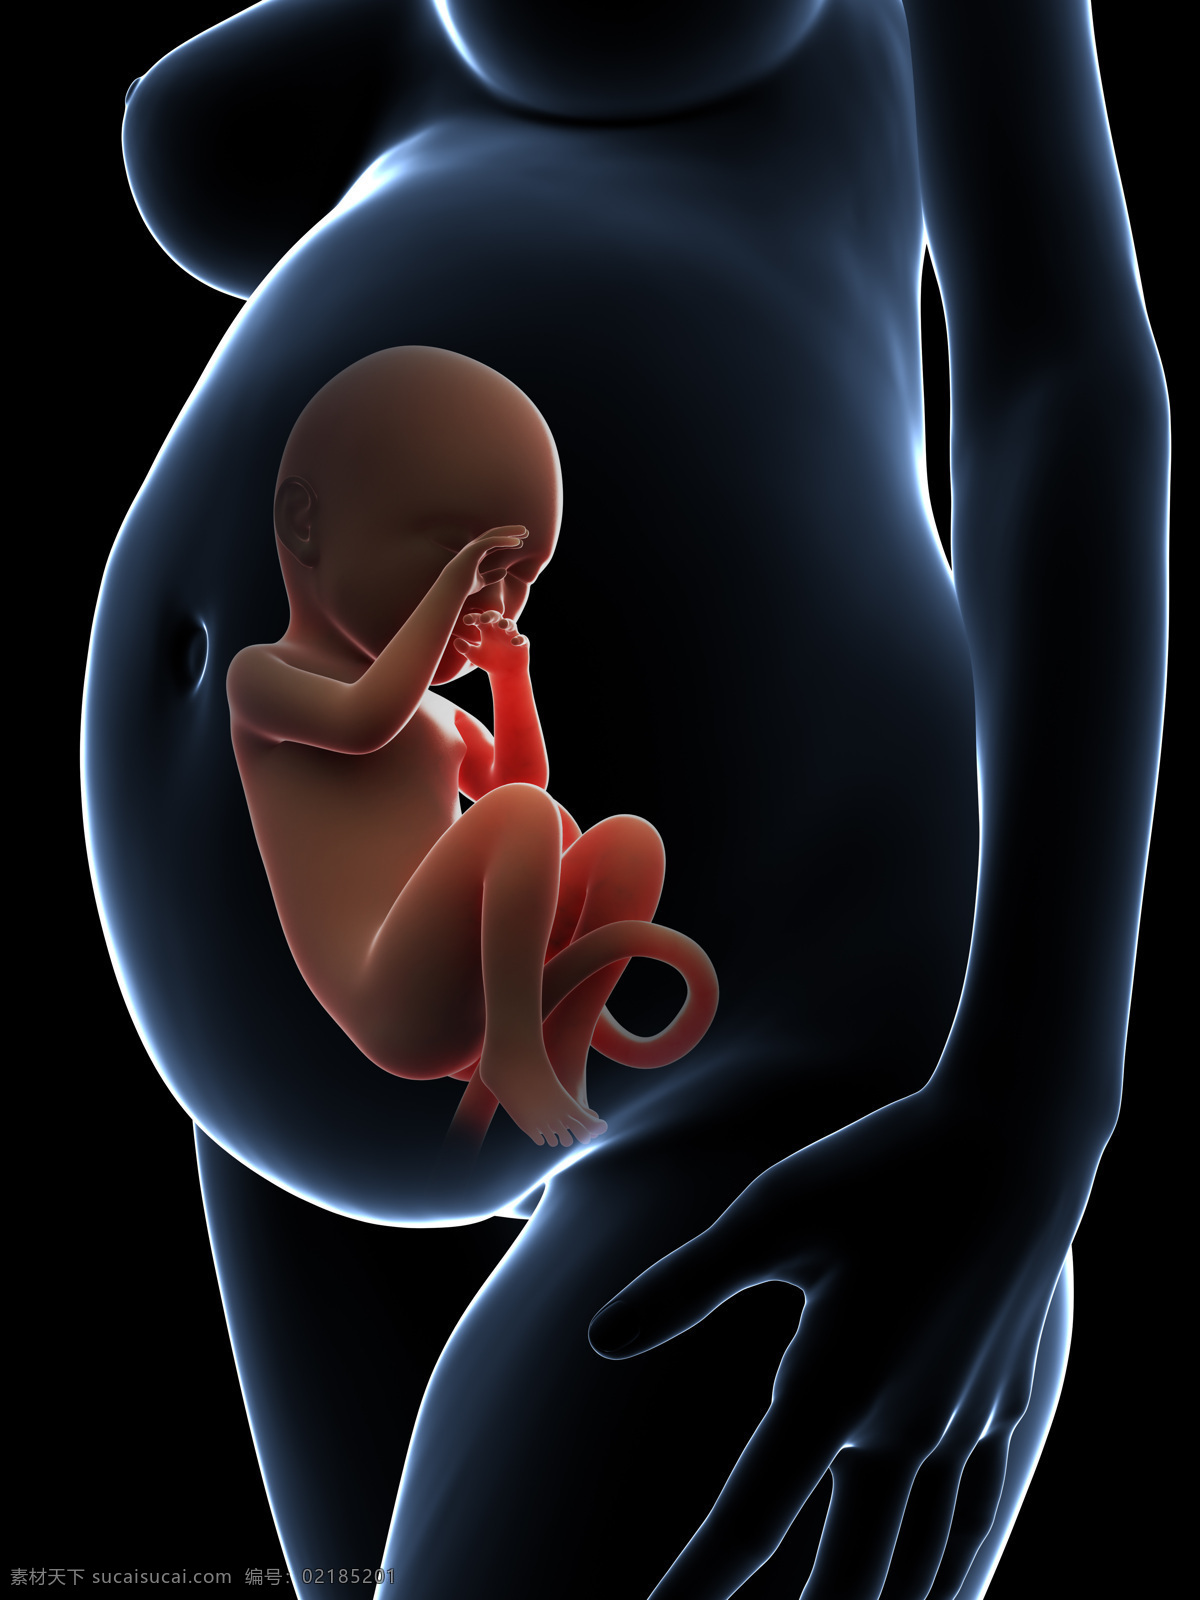 发育中的婴儿 唯美 炫酷 3d 胚胎 发育 婴儿 早期婴儿 初期婴儿 怀孕 子宫里的婴儿 3d设计